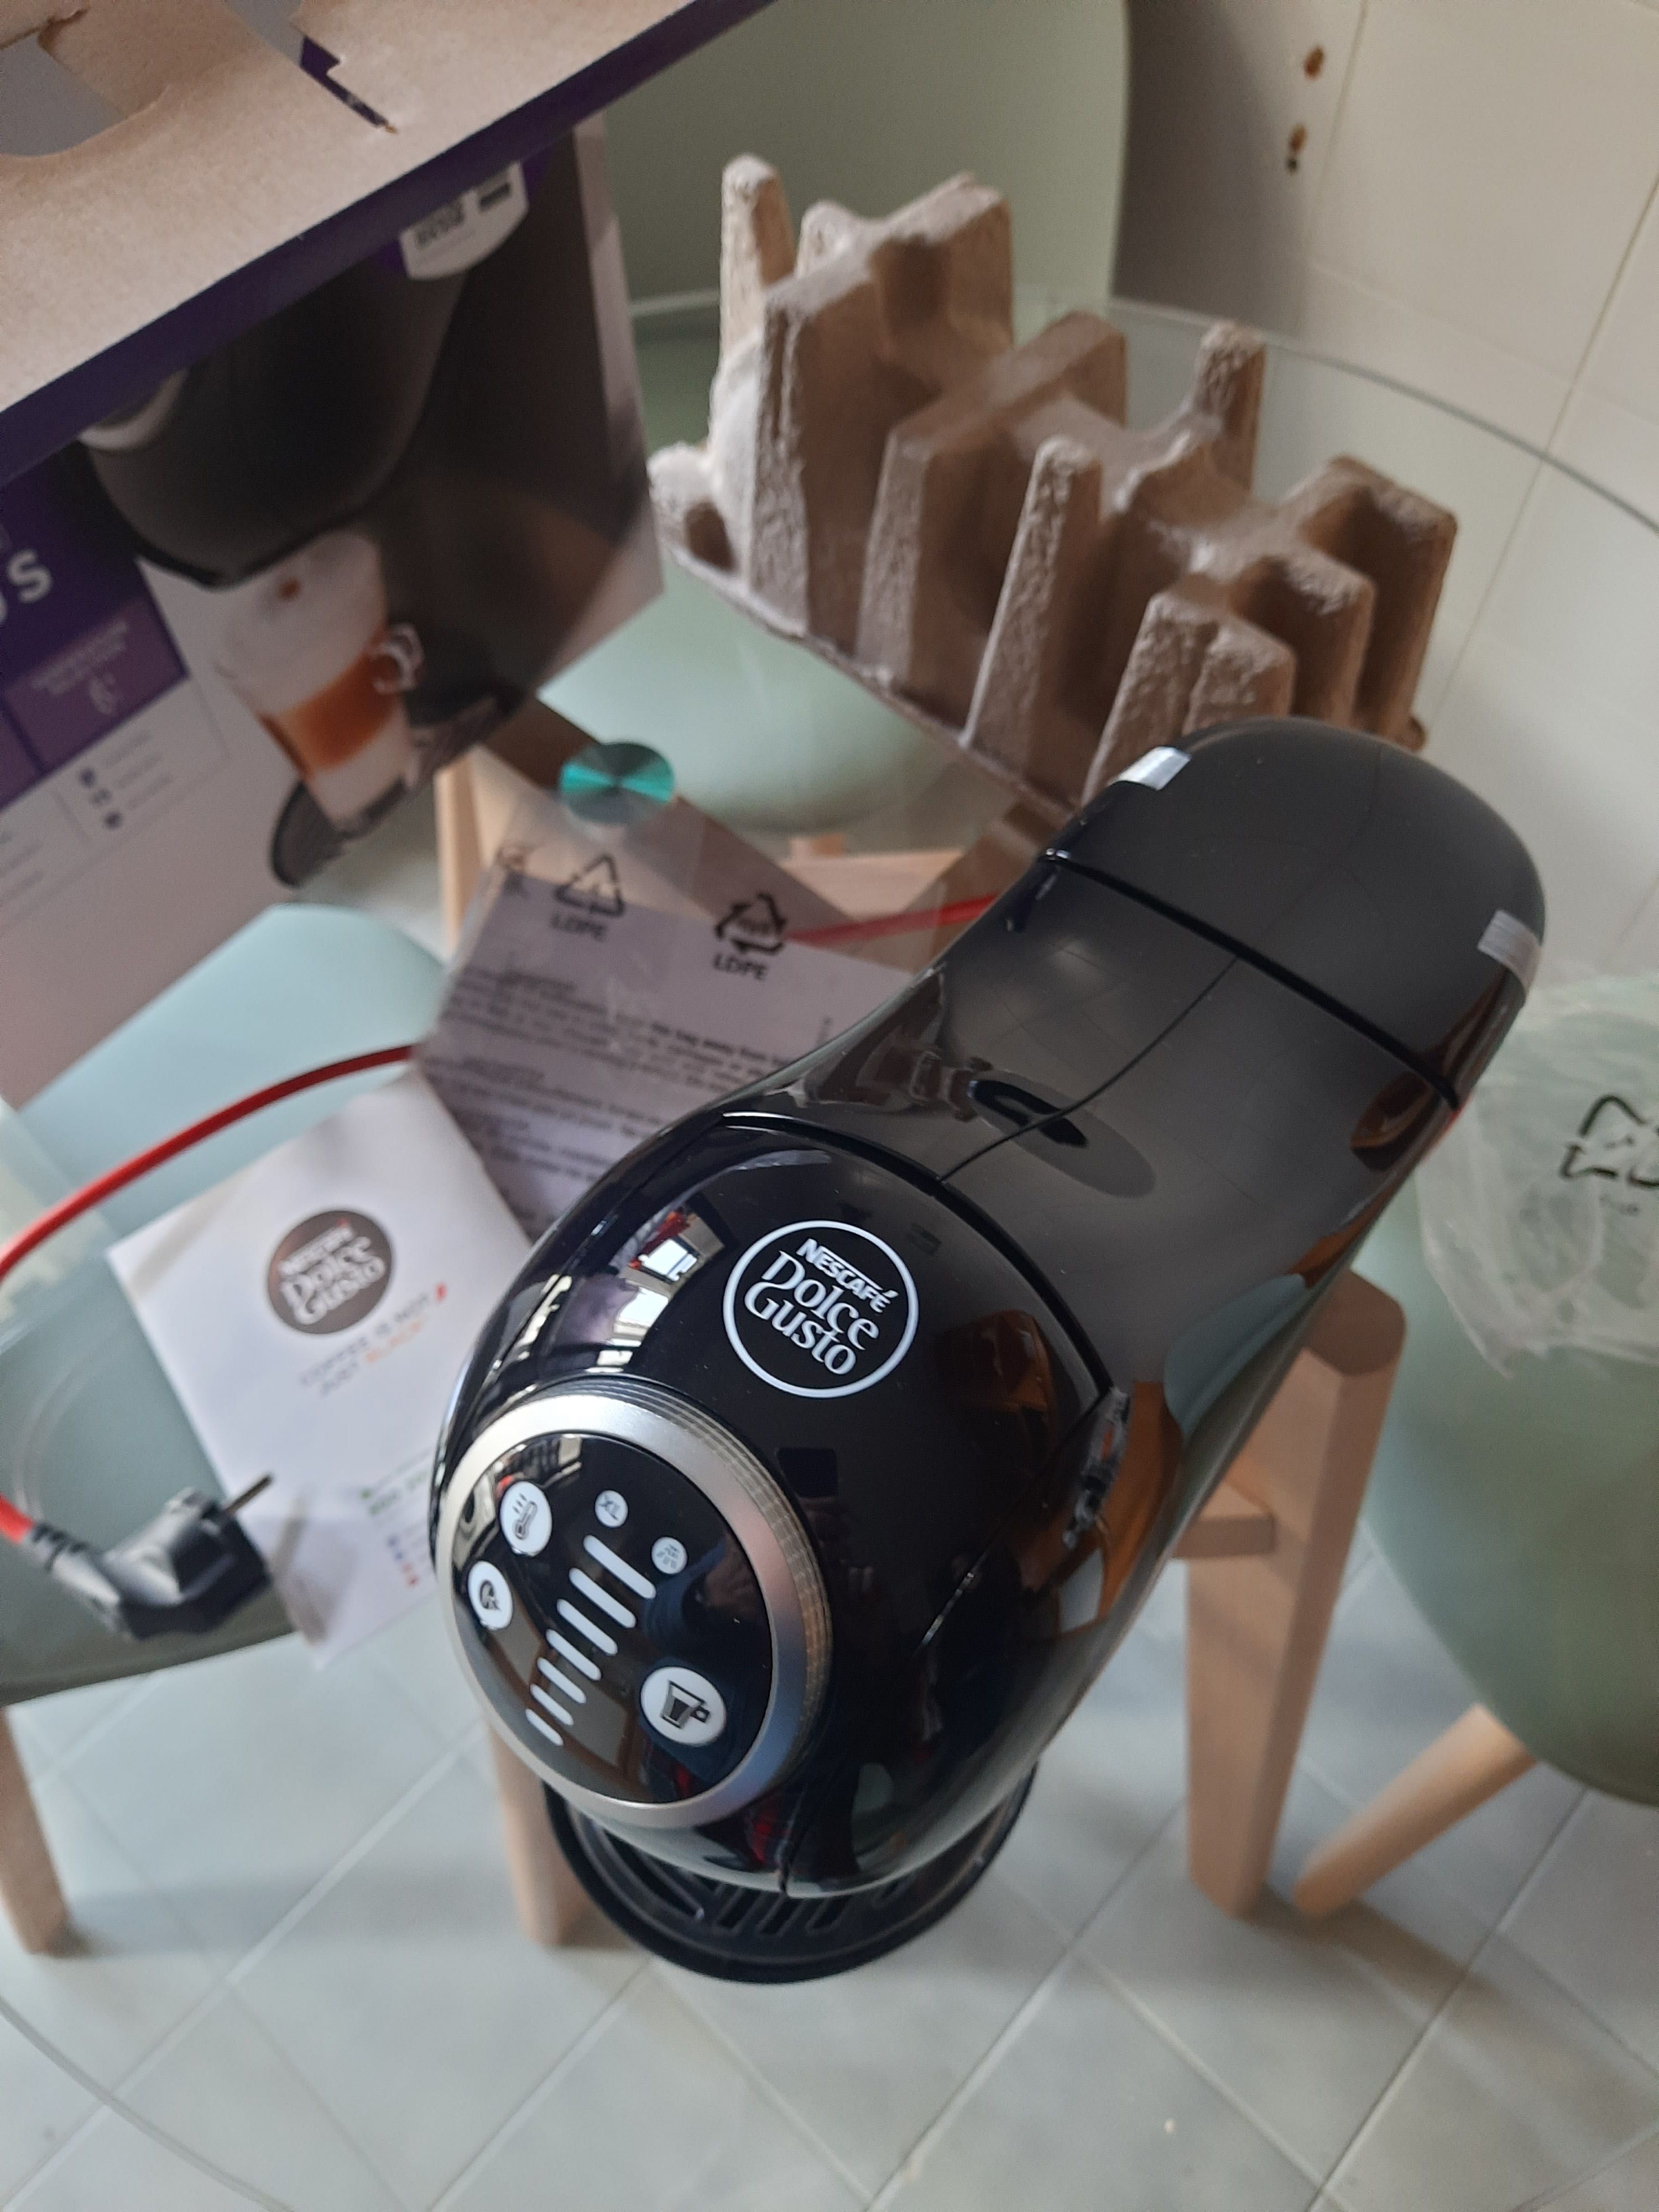 Máquina de café Genio S Plus Preta - Nova, sem utilização